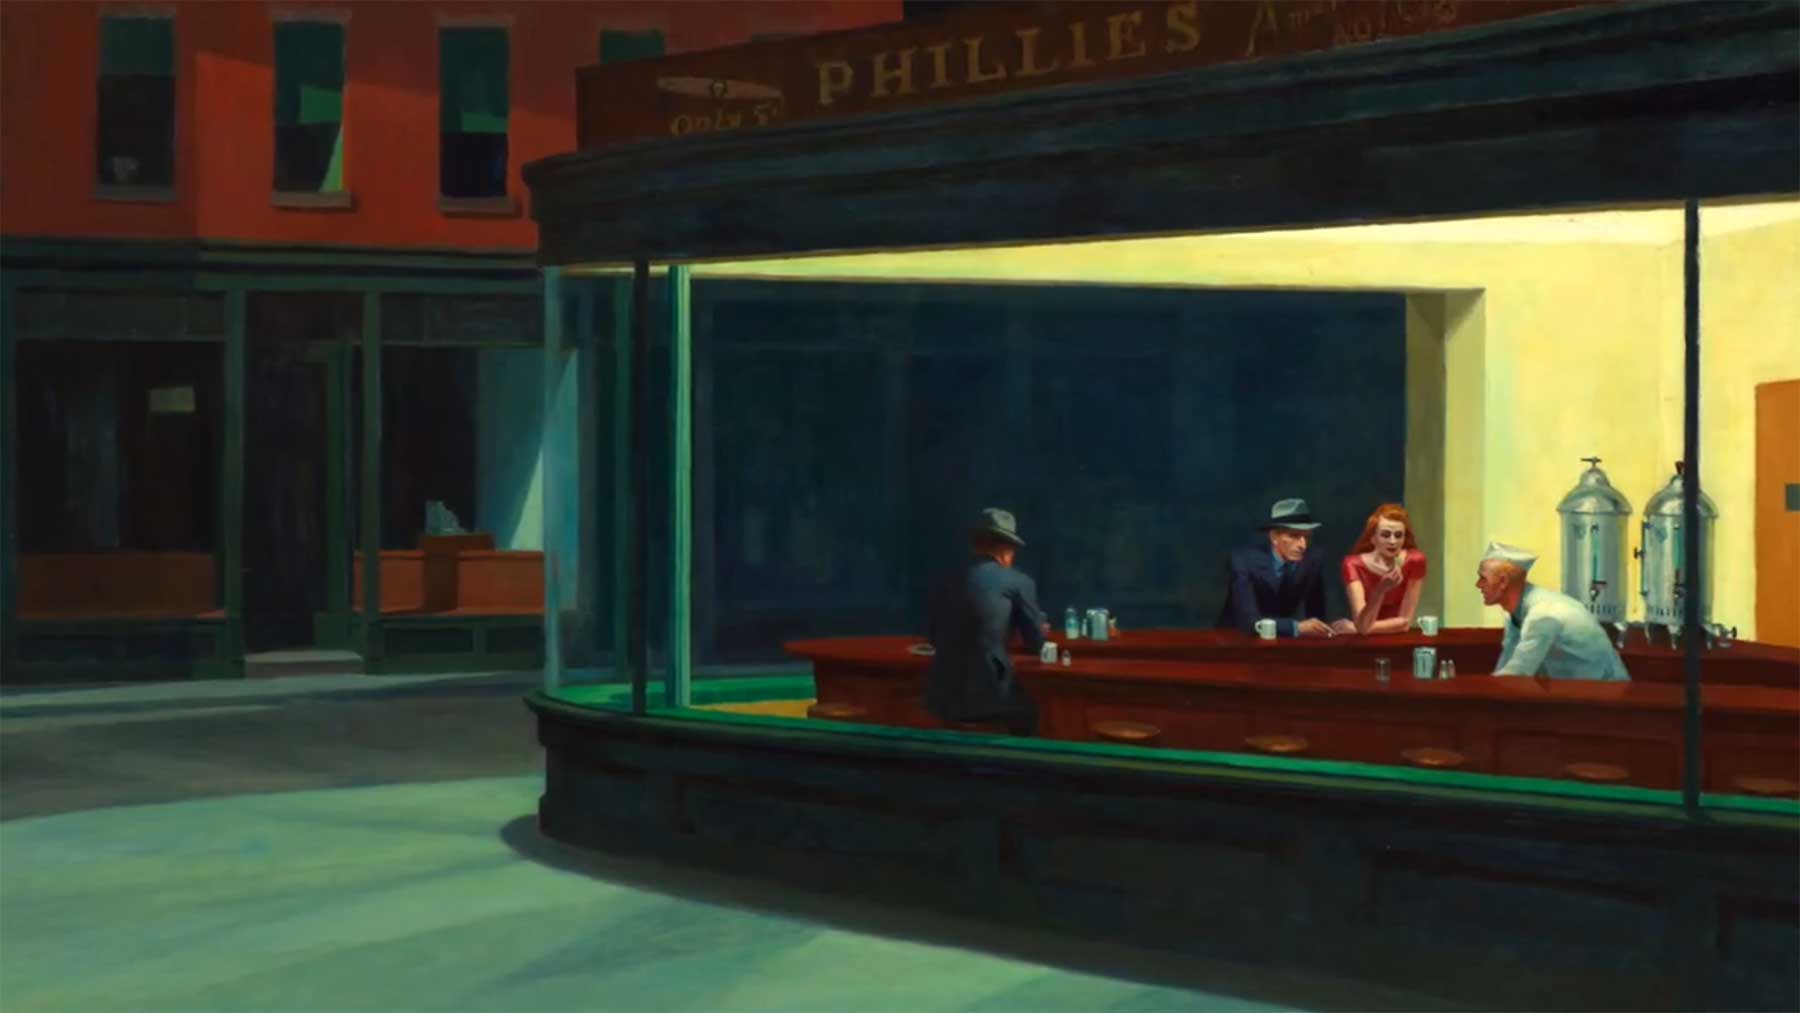 Erklärung des Gemäldes „Nighthawks“ von Edward Hopper